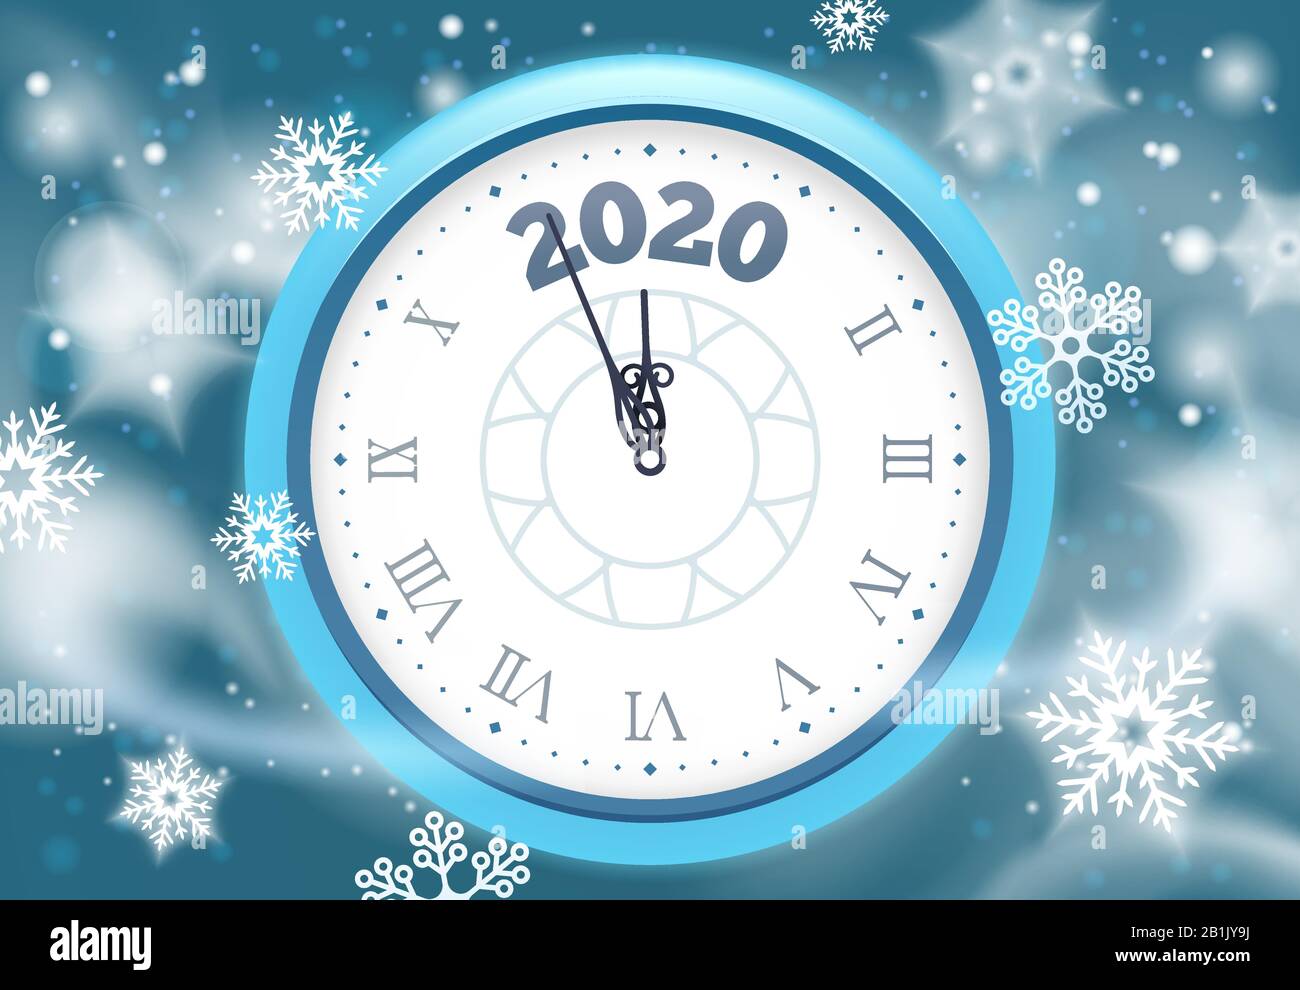 Neues Schneeplaster für das Jahr 2020. Winterurlaub Countdown-Uhr mit Schneeflocken, Vintage-Uhren Pfeile und Feiertagsfeier Stunden Vektor-Illustration Stock Vektor